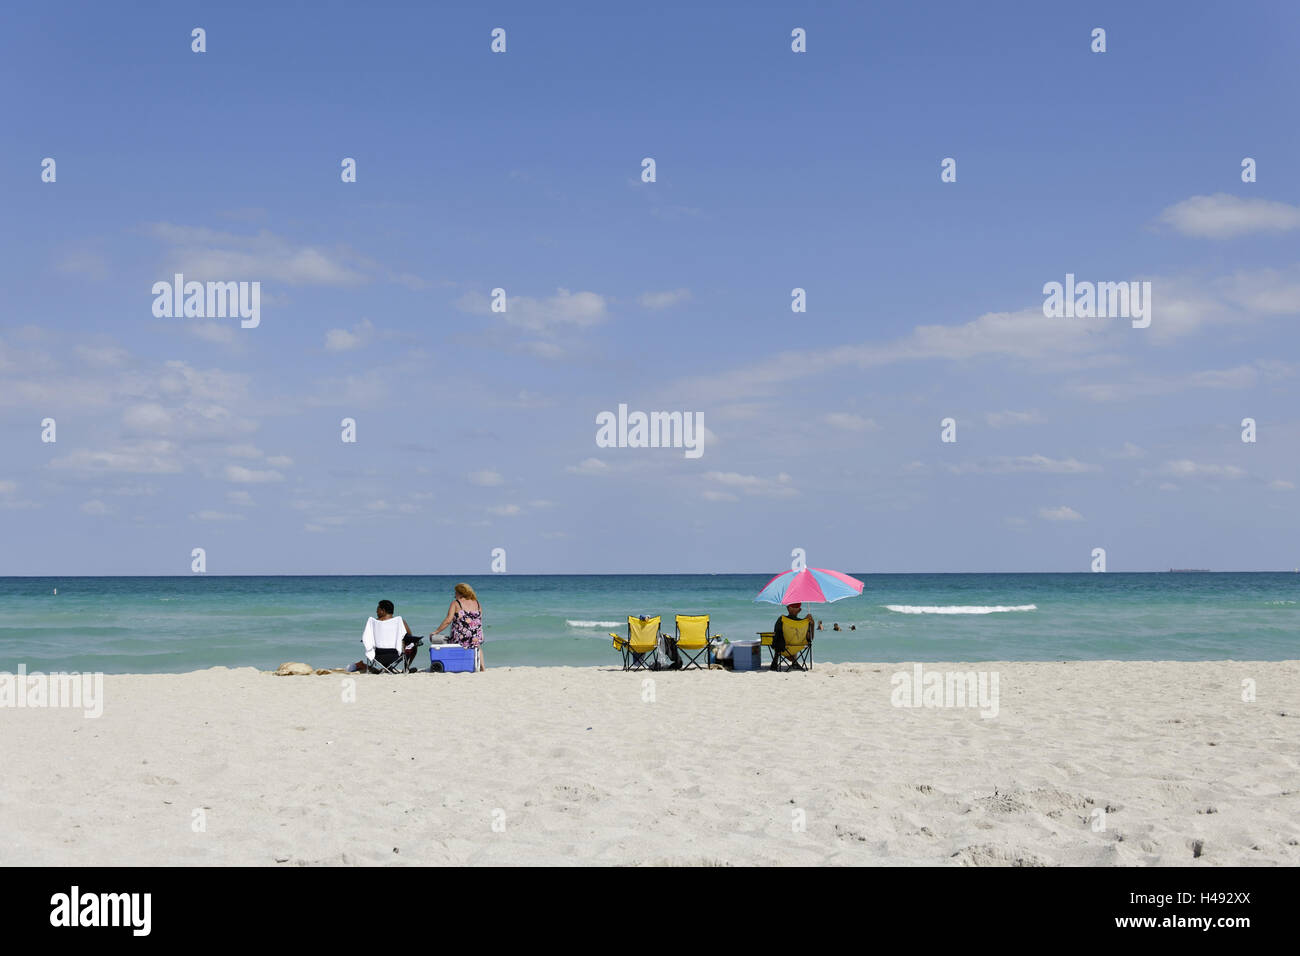 Mujer sentada sobre cool box, vida de playa, playa el párrafo, sutura 77 Street, Miami South Beach, Atlantic, Florida, Estados Unidos. Foto de stock